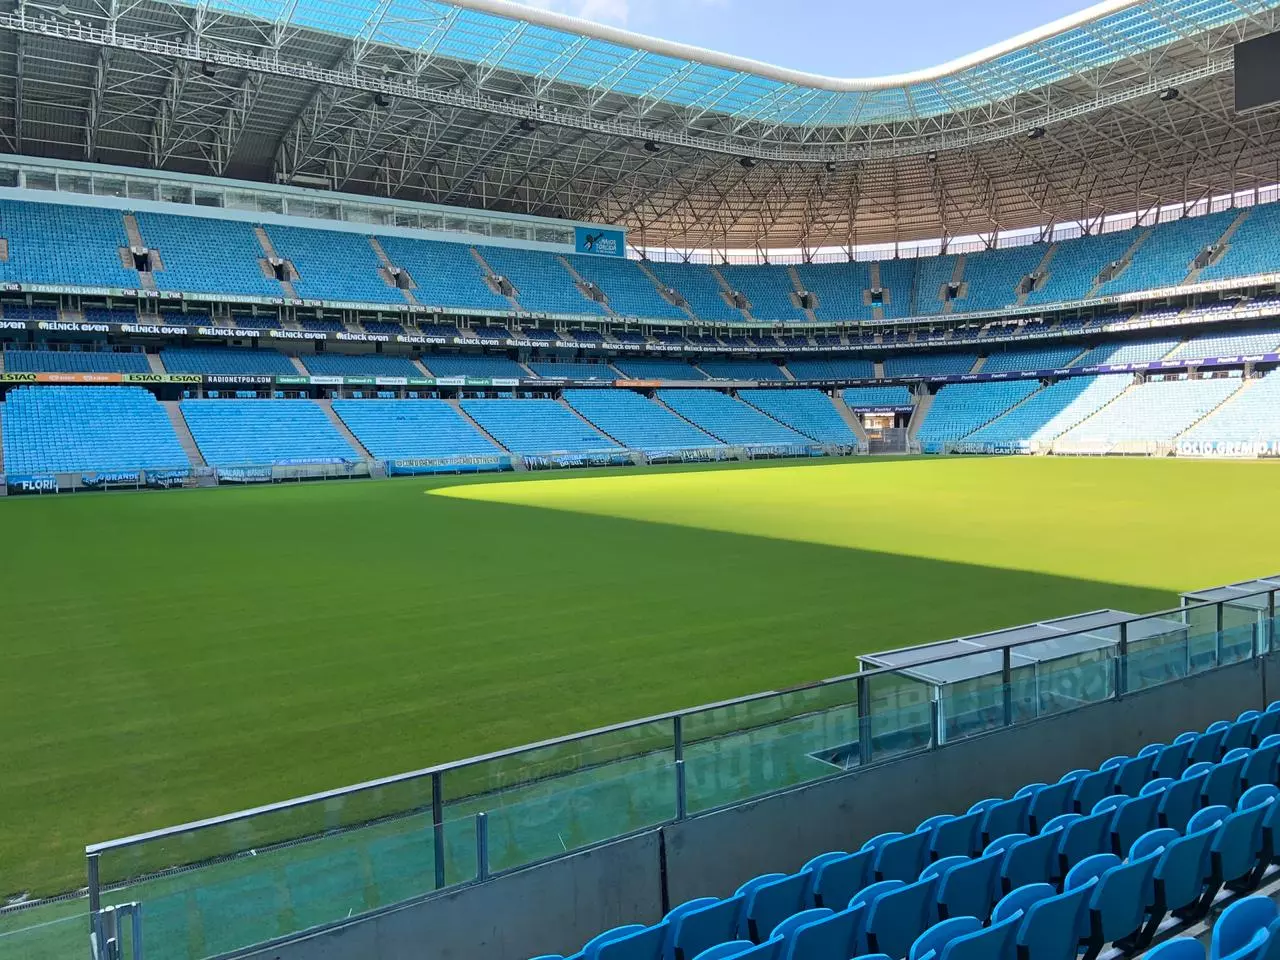 Grêmio pode ser impedido de jogar na Arena OAS após novidade do